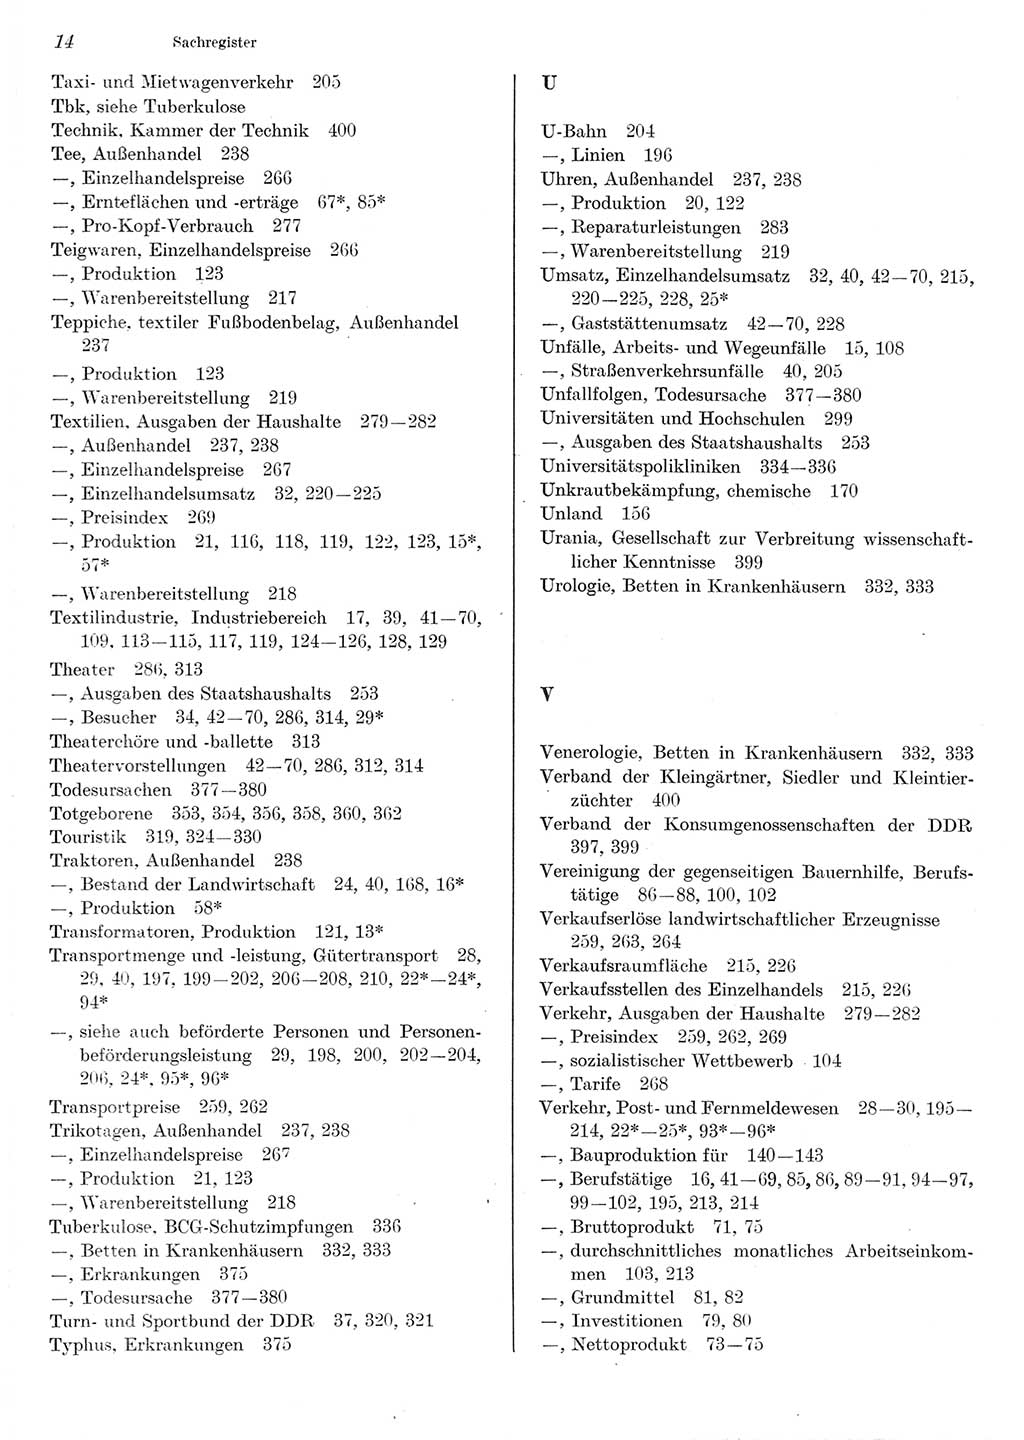 Statistisches Jahrbuch der Deutschen Demokratischen Republik (DDR) 1980, Seite 14 (Stat. Jb. DDR 1980, S. 14)